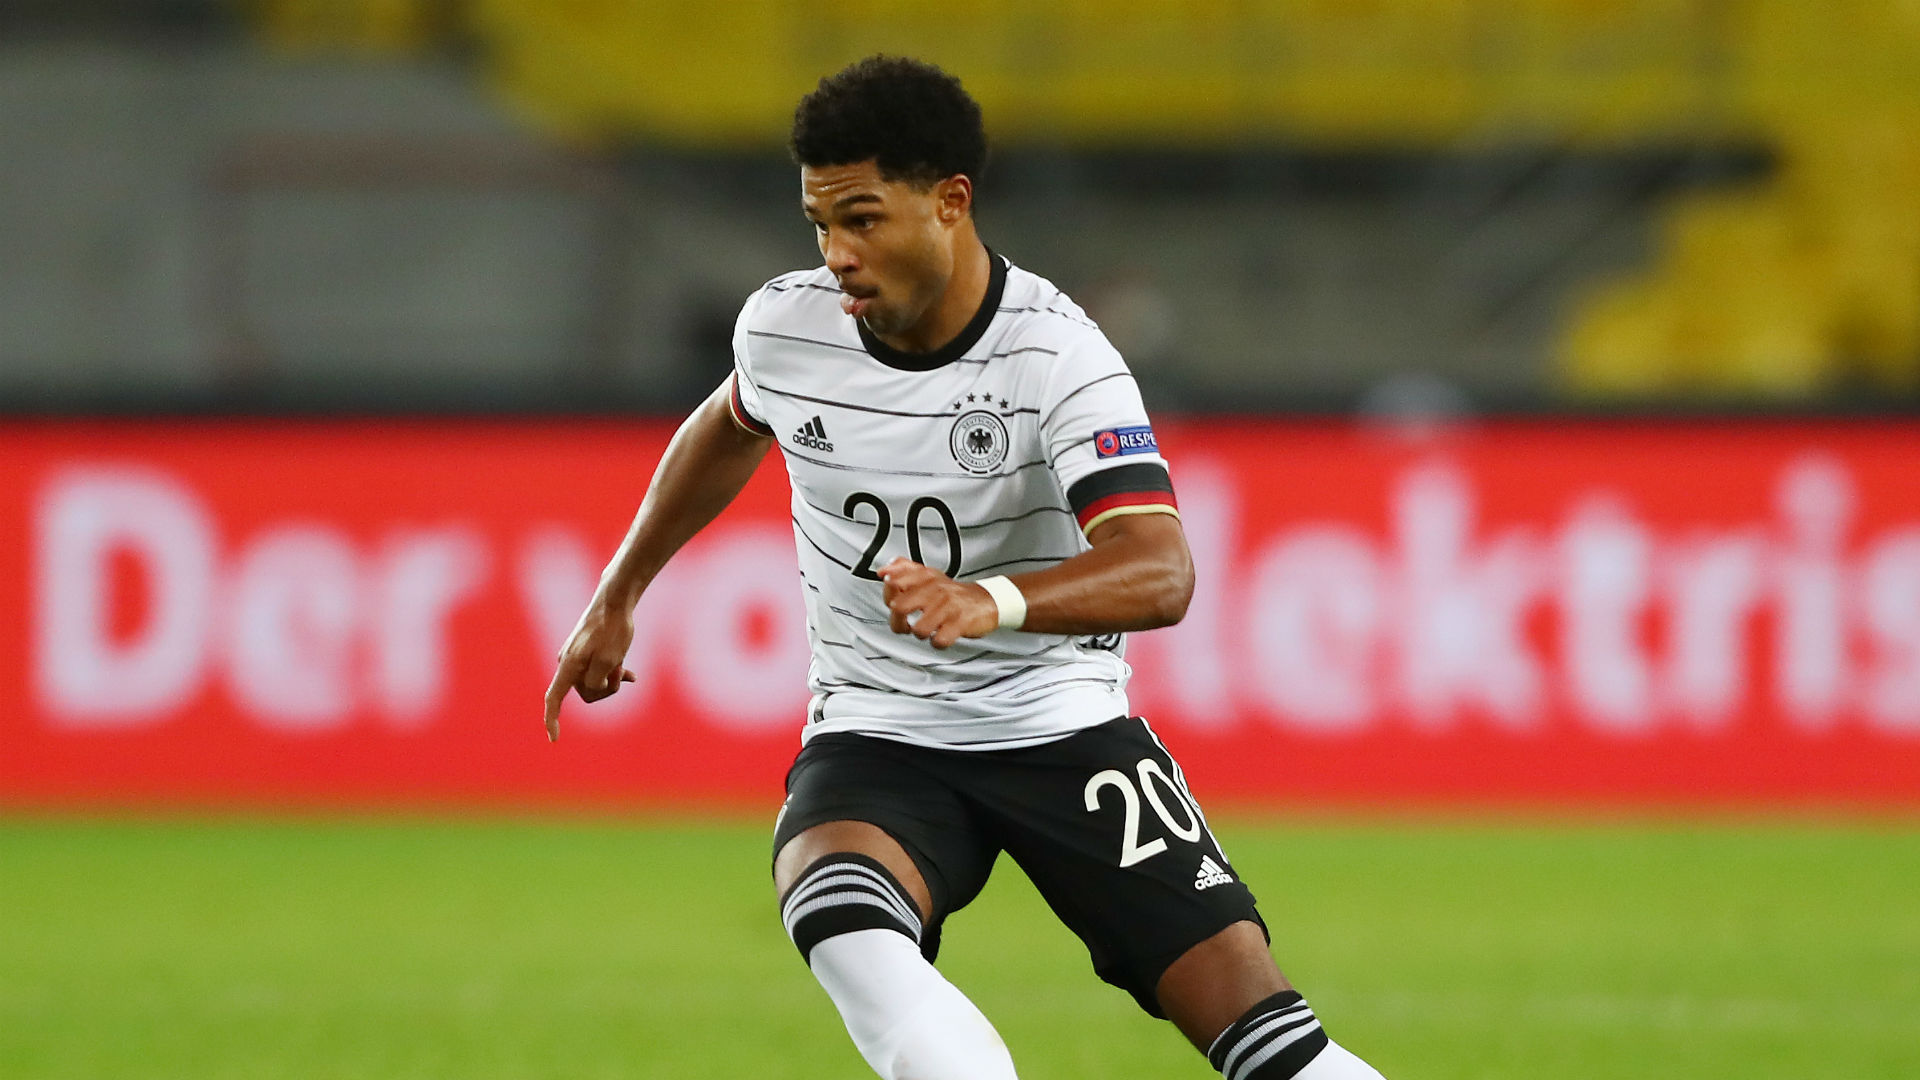 Germany 3-3 Switzerland: Gnabry rescues Die Mannschaft in Nations League thriller